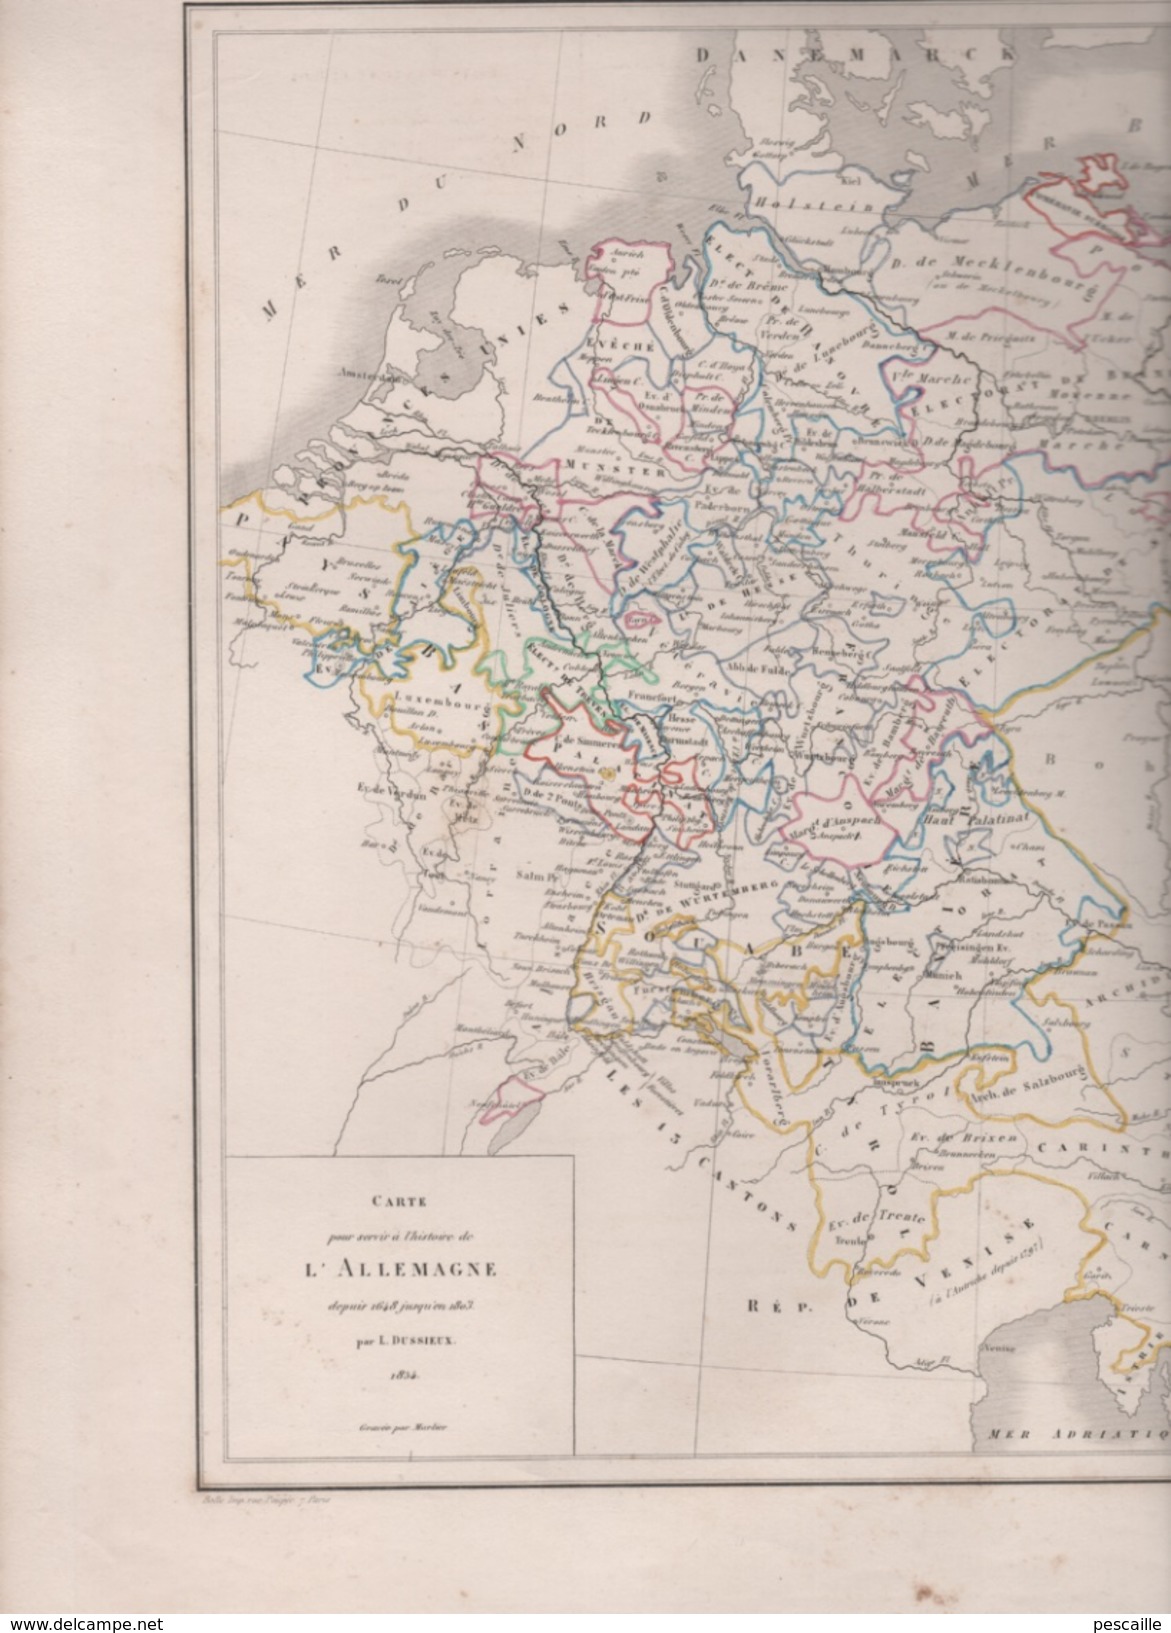 CARTE POUR SERVIR A L'HISTOIRE DE L' ALLEMAGNE DE 1648 A 1803 DRESSEE PAR L DUSSIEUX 1854 - LIGUE DU RHIN / GRANDS ETATS - Landkarten